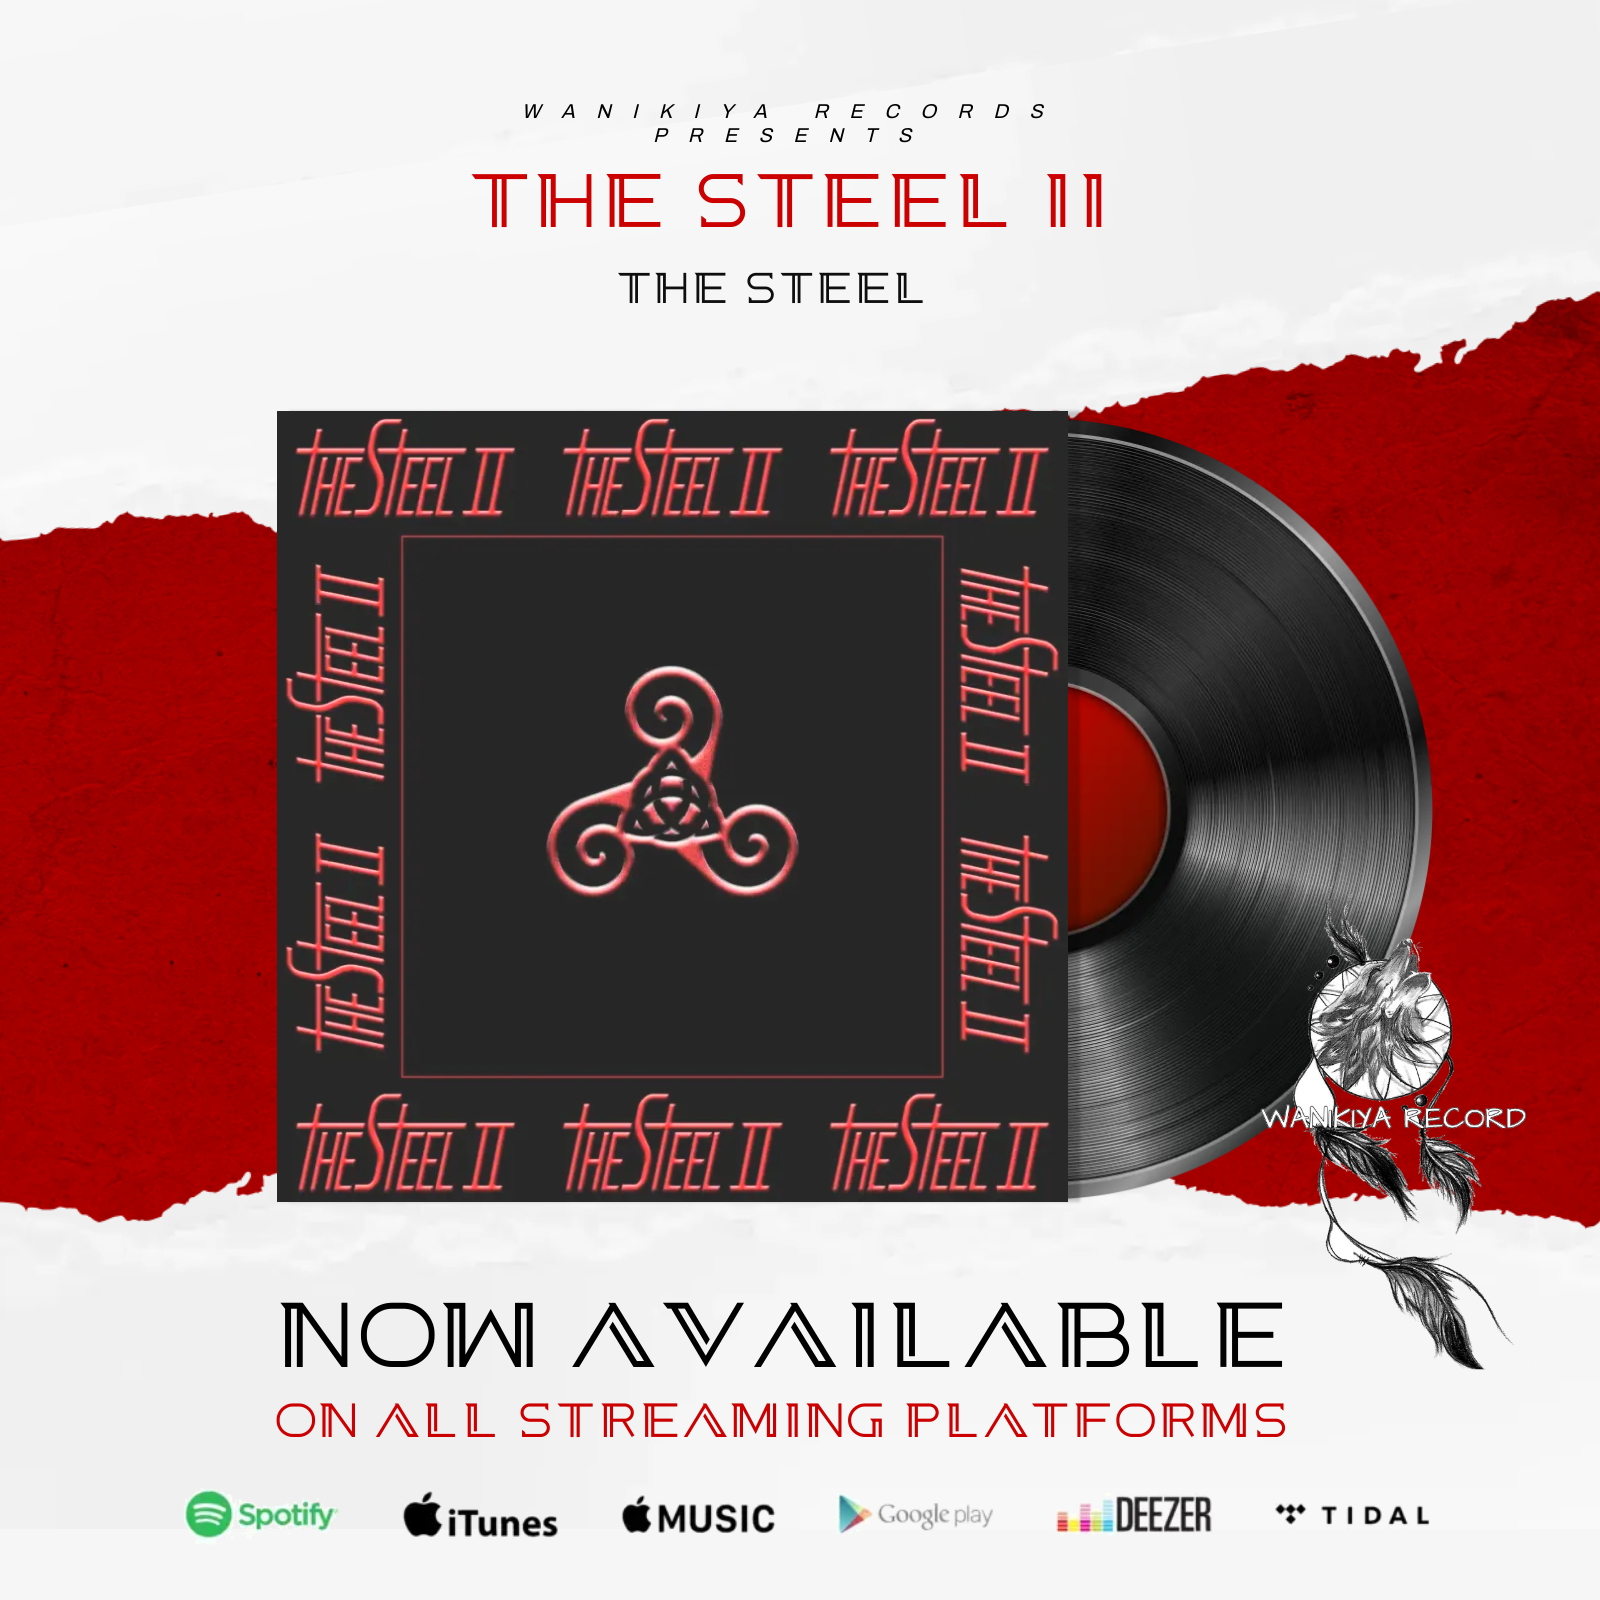 La Wanikiya Record annuncia il nuovissimo album dei The Steel , dal titolo “The Steel II”